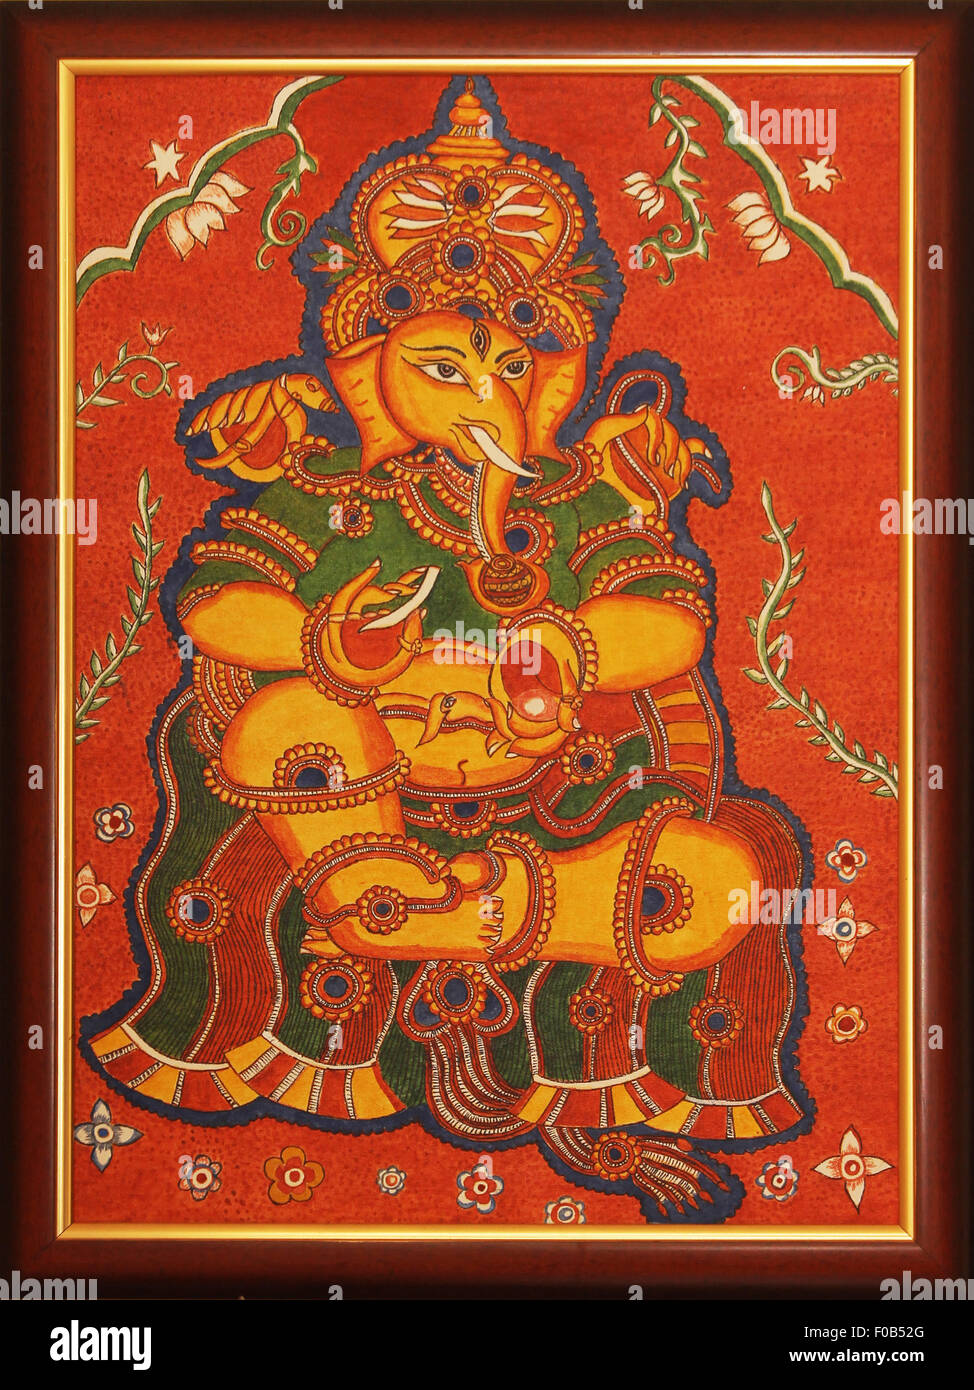 La peinture murale de Lord Ganesh sur toile Banque D'Images